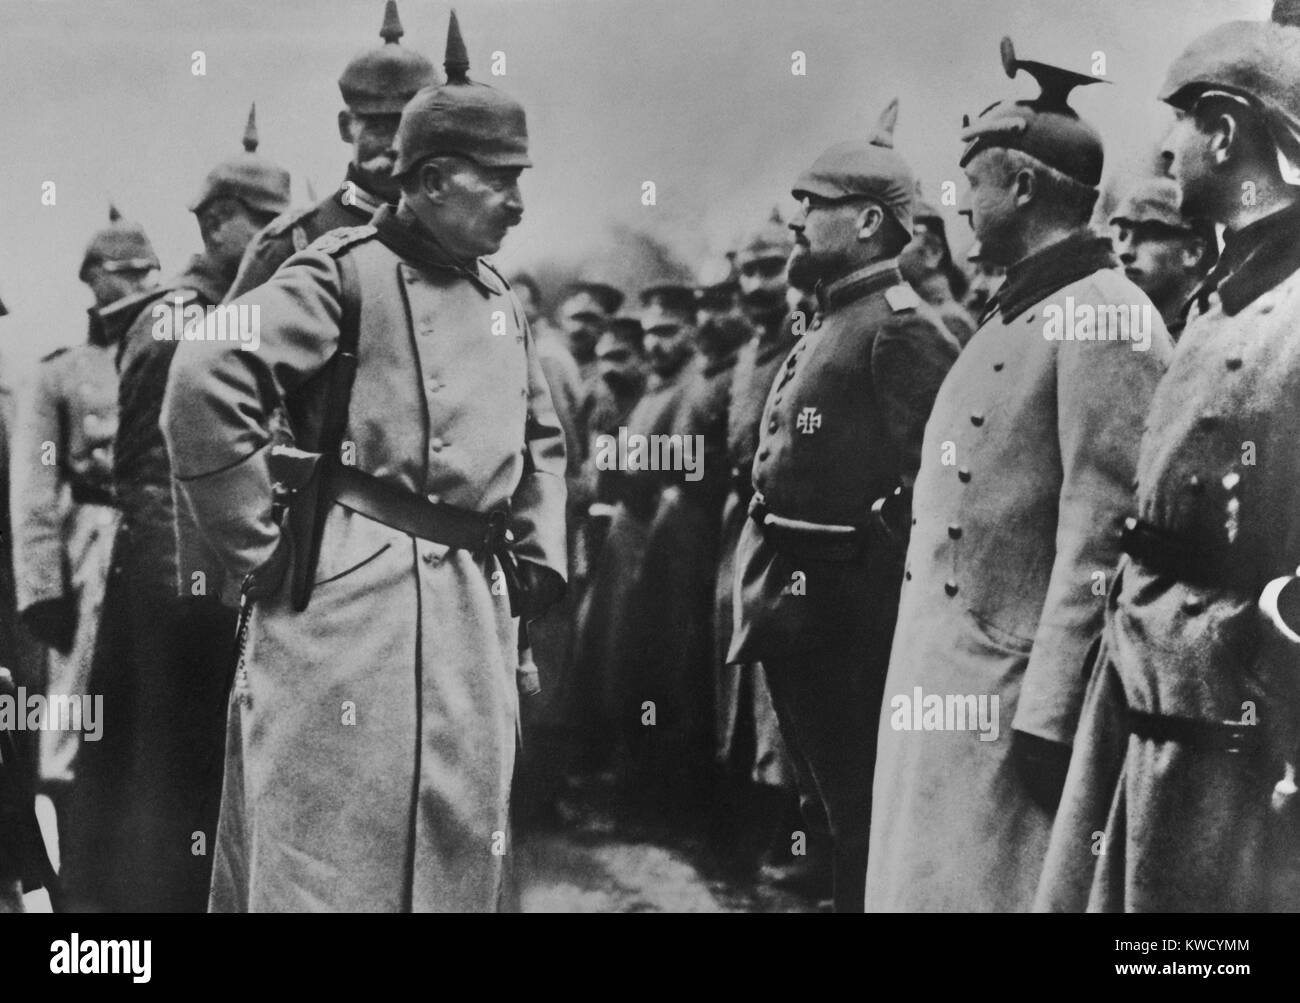 Kaiser Wilhelm II. die Inspektion deutscher Soldaten in dem Gebiet während des Zweiten Weltkrieges 1. Wilhelms WW1-Befehl Rolle war meistens, dass einer Galionsfigur, mit den meisten Macht in den Händen von Hindenburg und Ludendorff (BSLOC 2017 2 47) Stockfoto